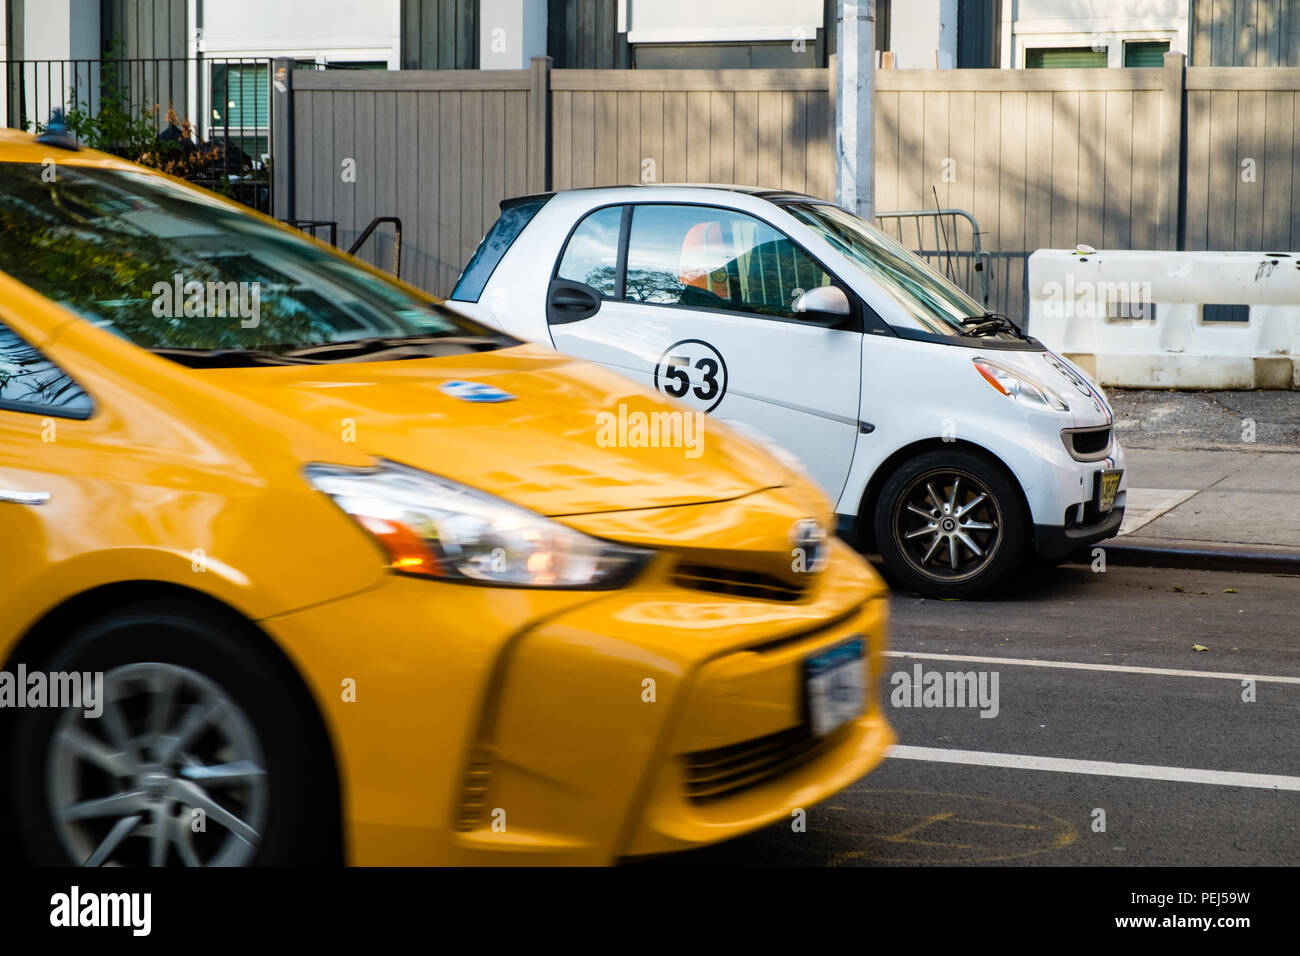 New York Taxi vorbei an einem Smart Auto mit Herbie Nummer 53 Aufkleber Stockfoto